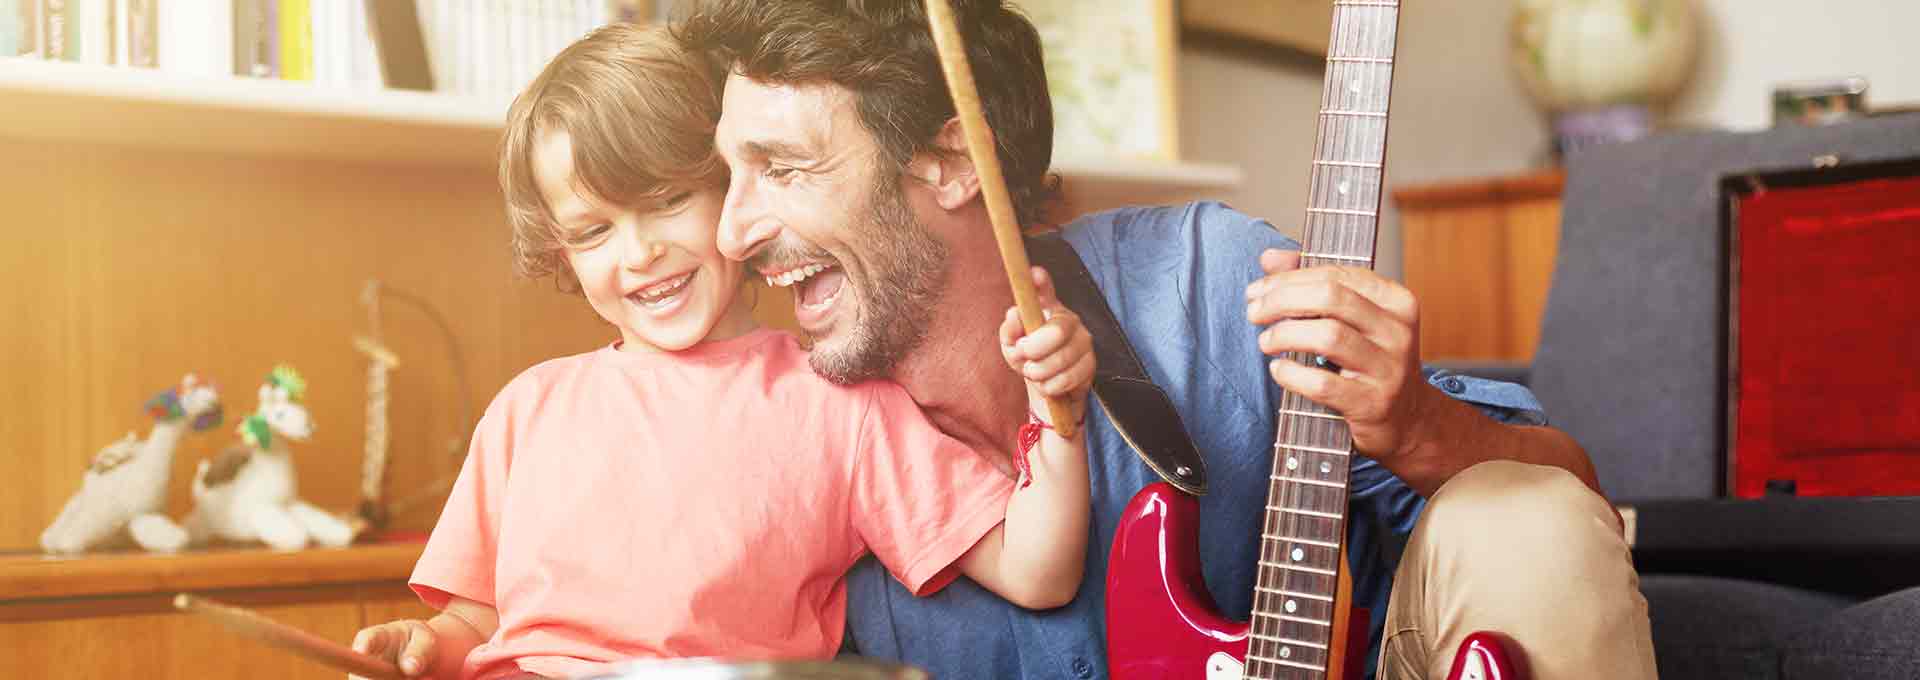 Ojciec używający aparatów Bernafon Viron gra na gitarze z pięcioletnim synem grającym na perkusji, cieszący się chwilą